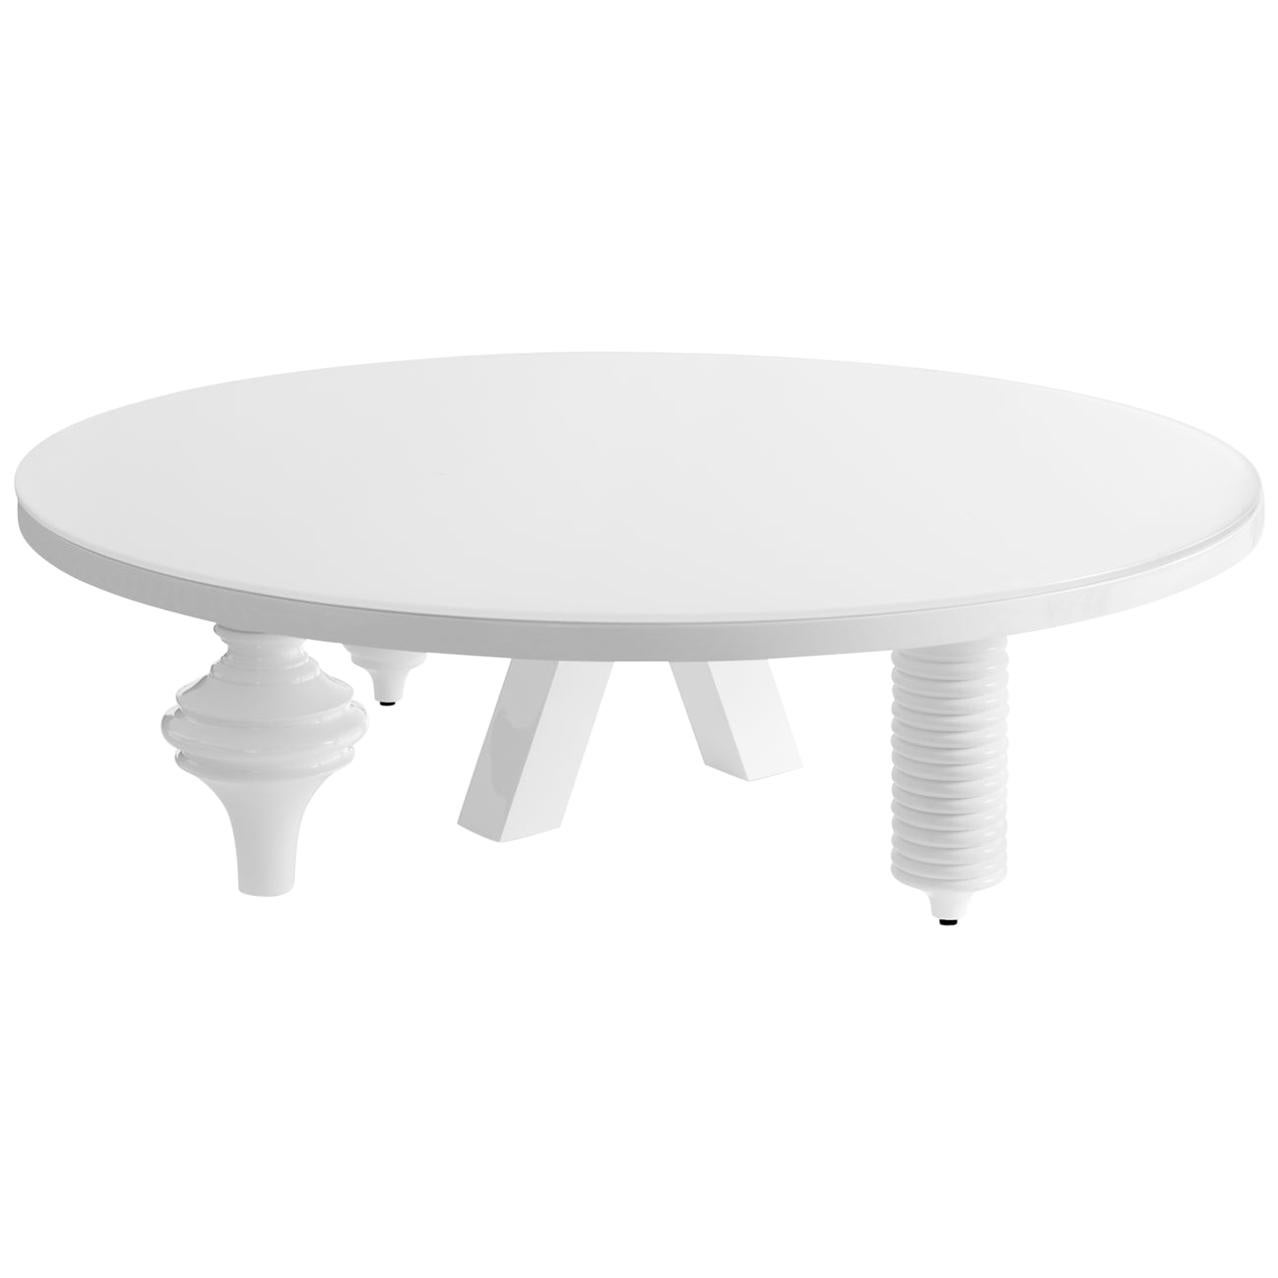 Table basse ronde contemporaine modèle "Multileg" de Jaime Hayon blanc brillant